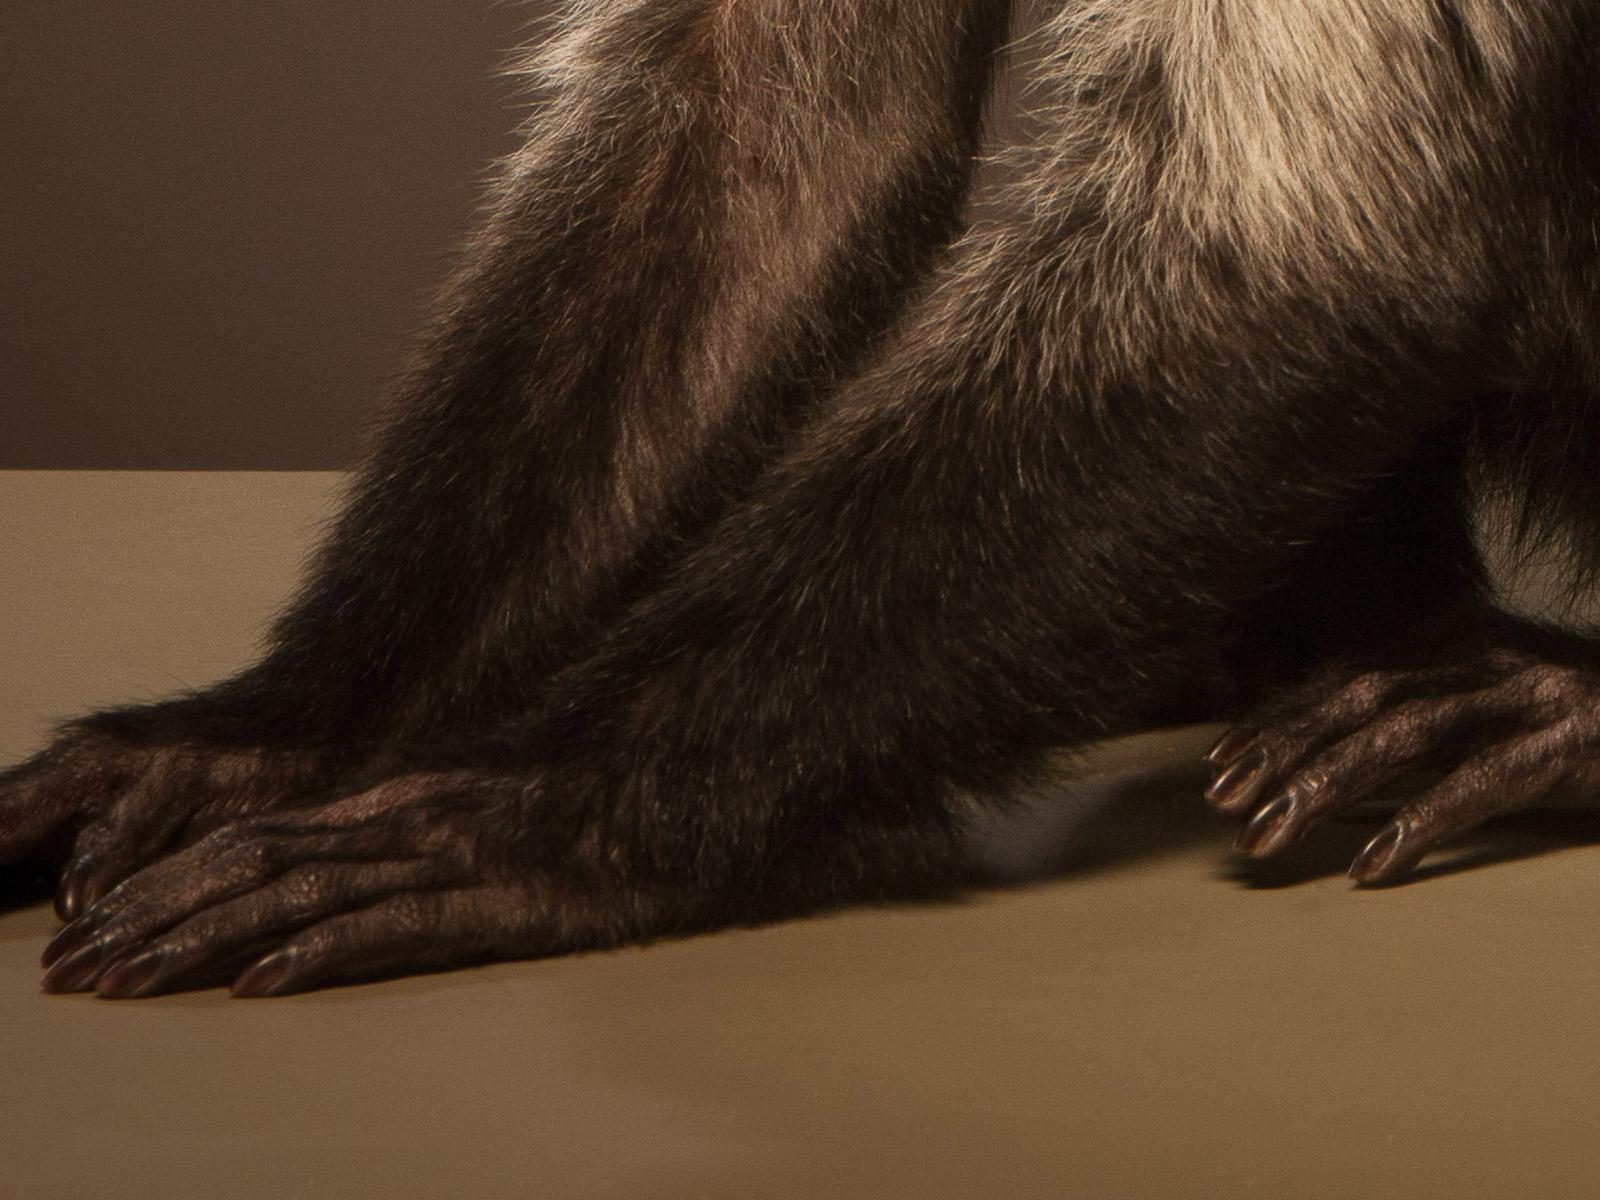 Capuchin 1, signierter Tier-Kunstdruck in limitierter Auflage, brauner und weißer Affe (Zeitgenössisch), Photograph, von Tim Platt